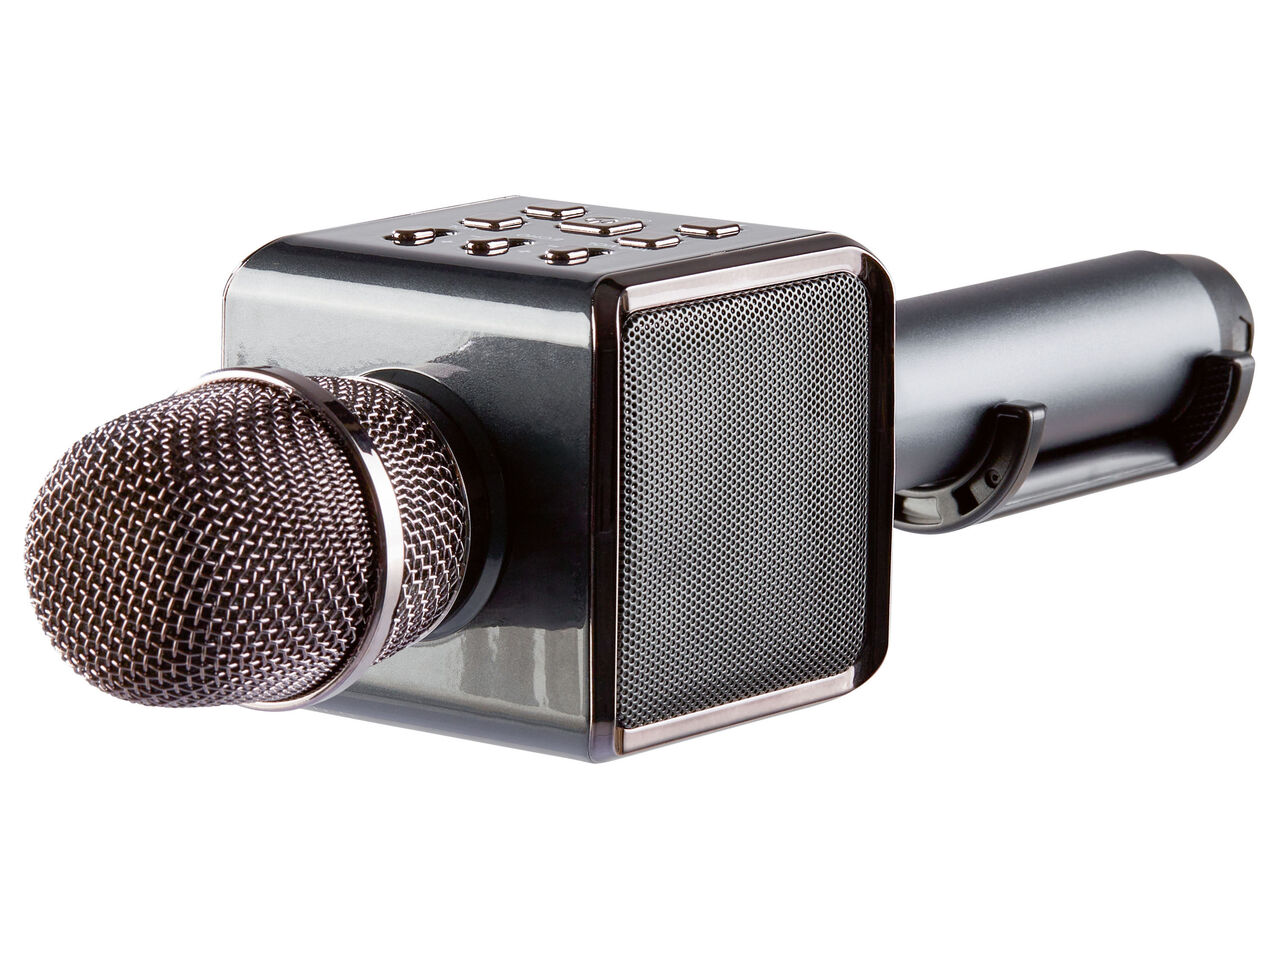 SILVERCREST® Mikrofon Karaoke z Bluetooth® , cena 119 PLN 
 
- automatyczne ...